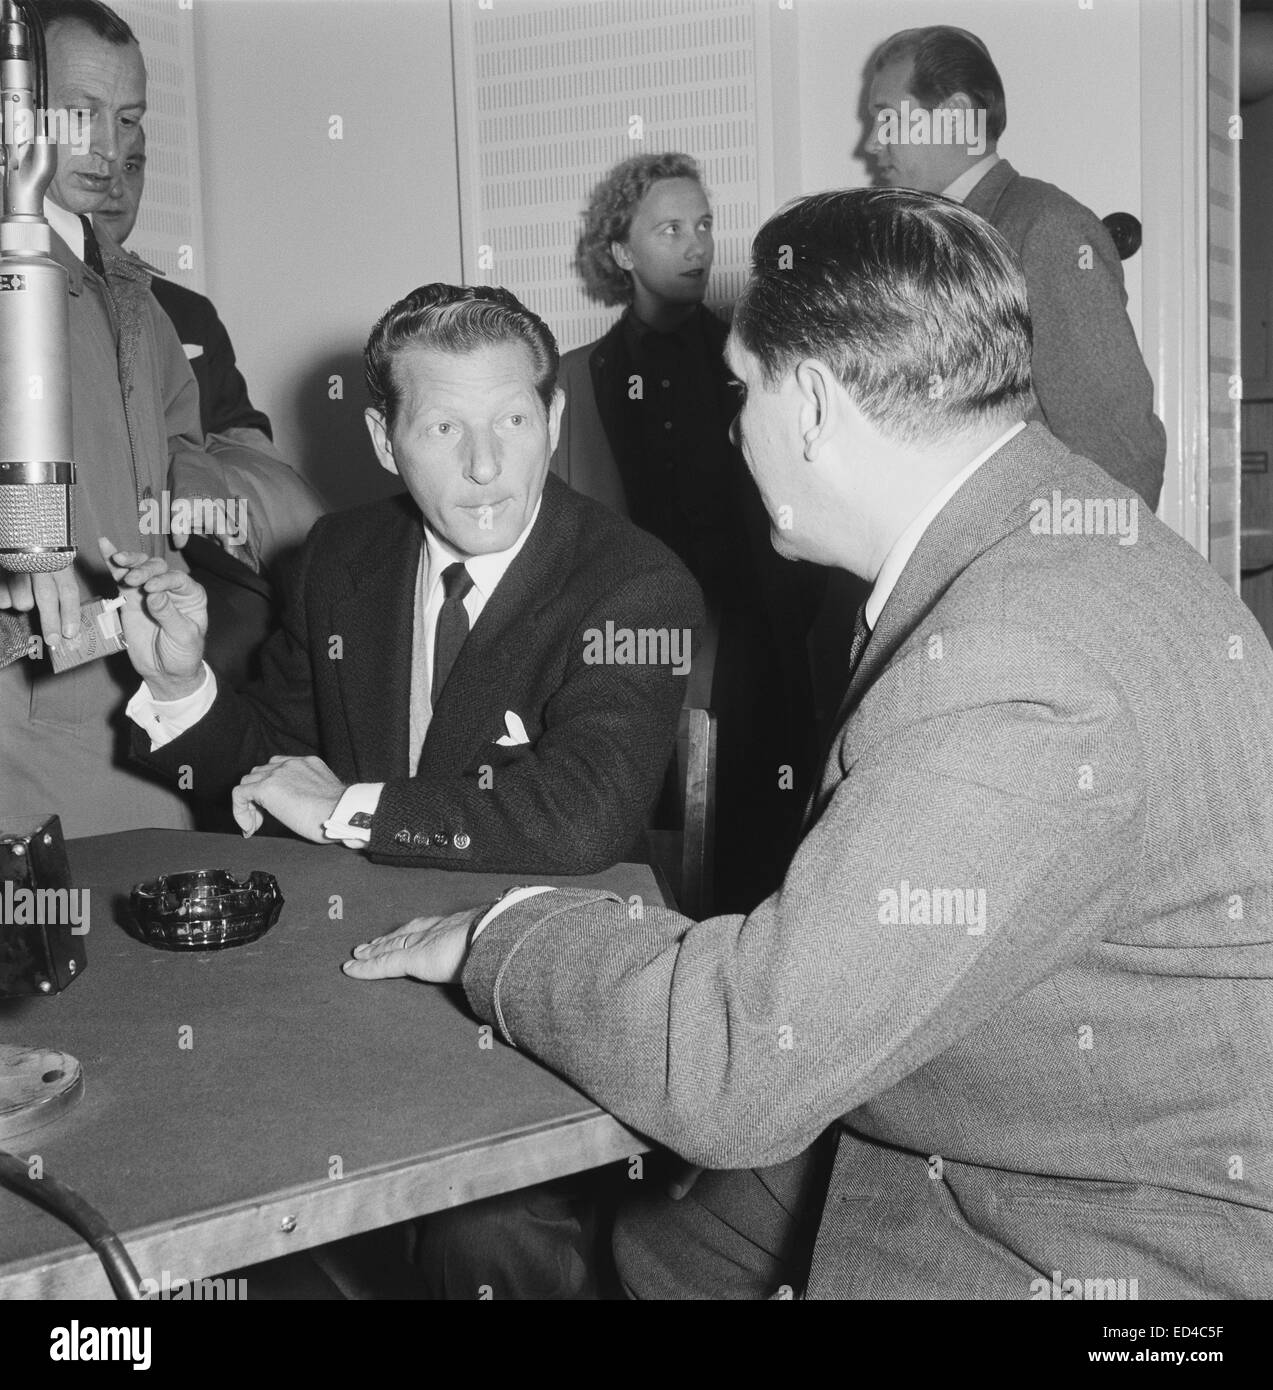 Der amerikanische Schauspieler Danny Kaye für der finnischen Rundfunkgesellschaft 1955 interviewt. Stockfoto